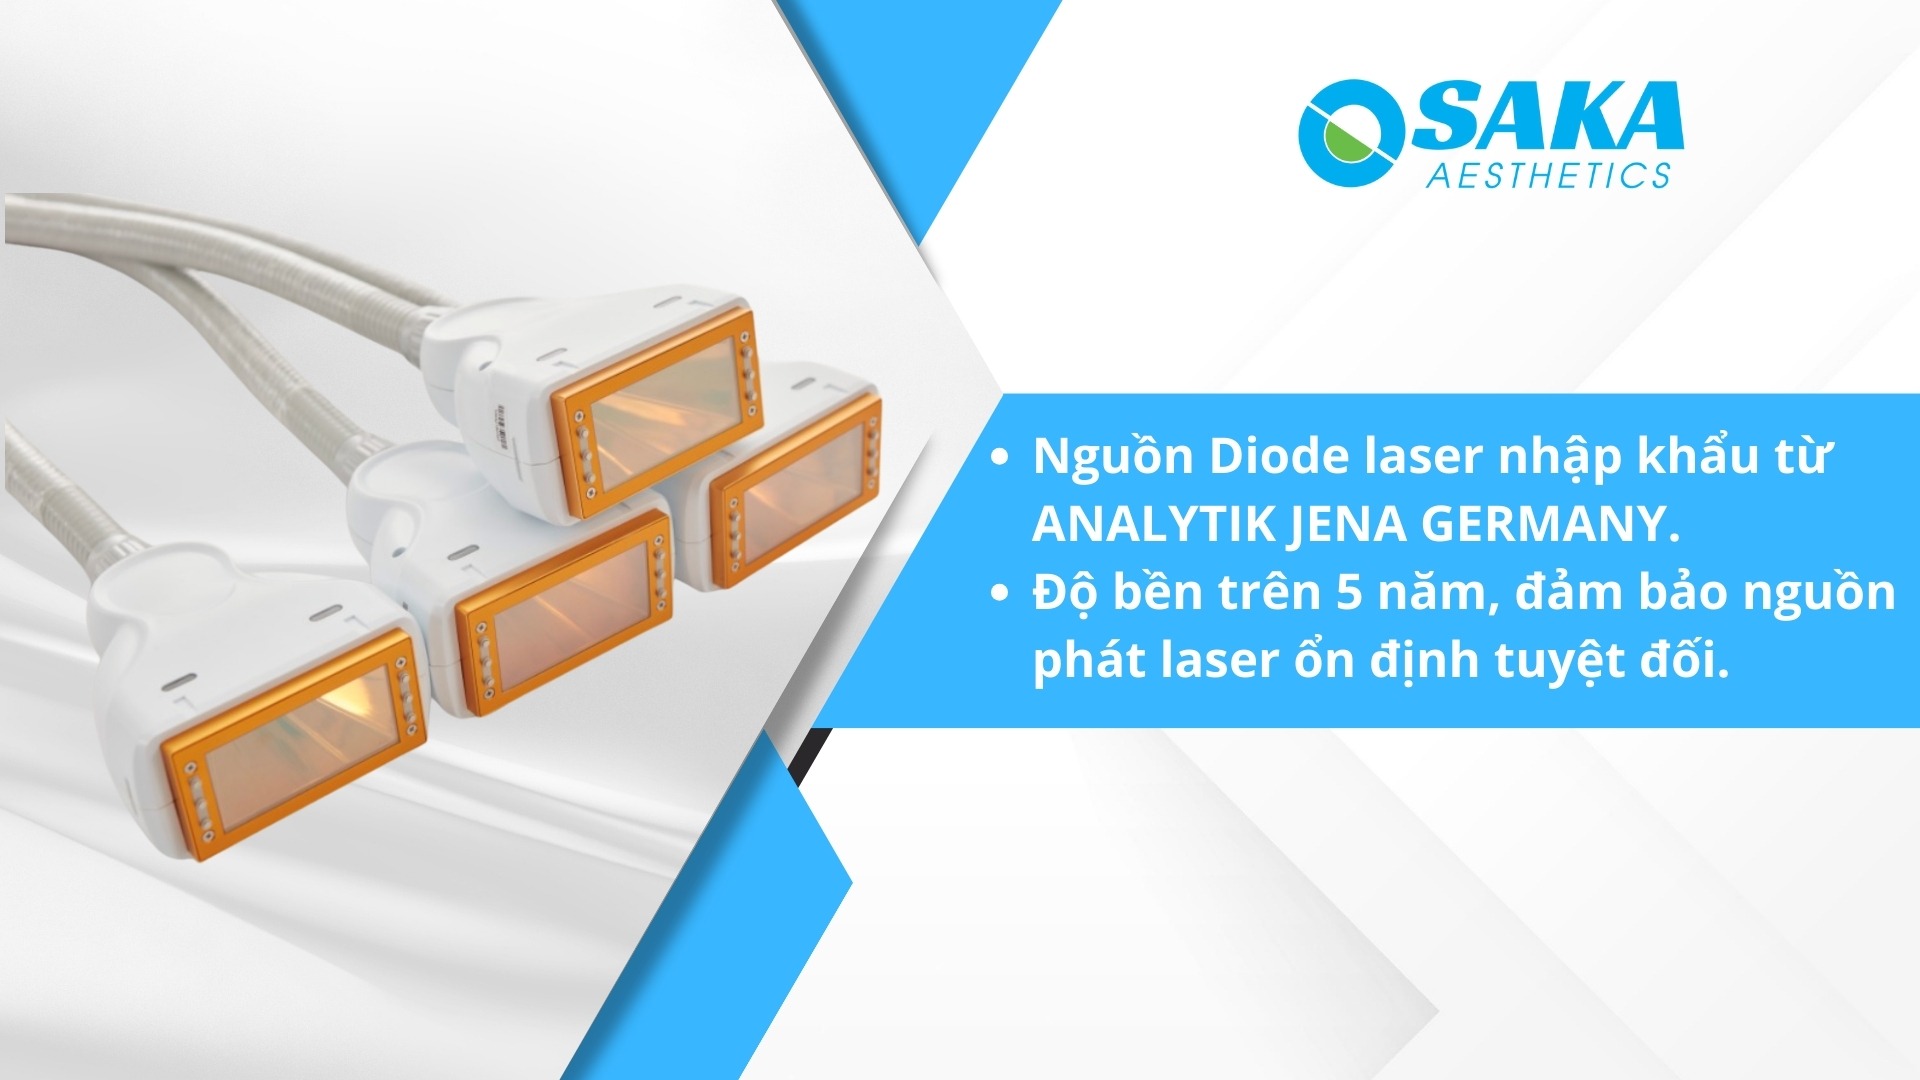 Nguồn Diode Laser được nhập khẩu từ Đức